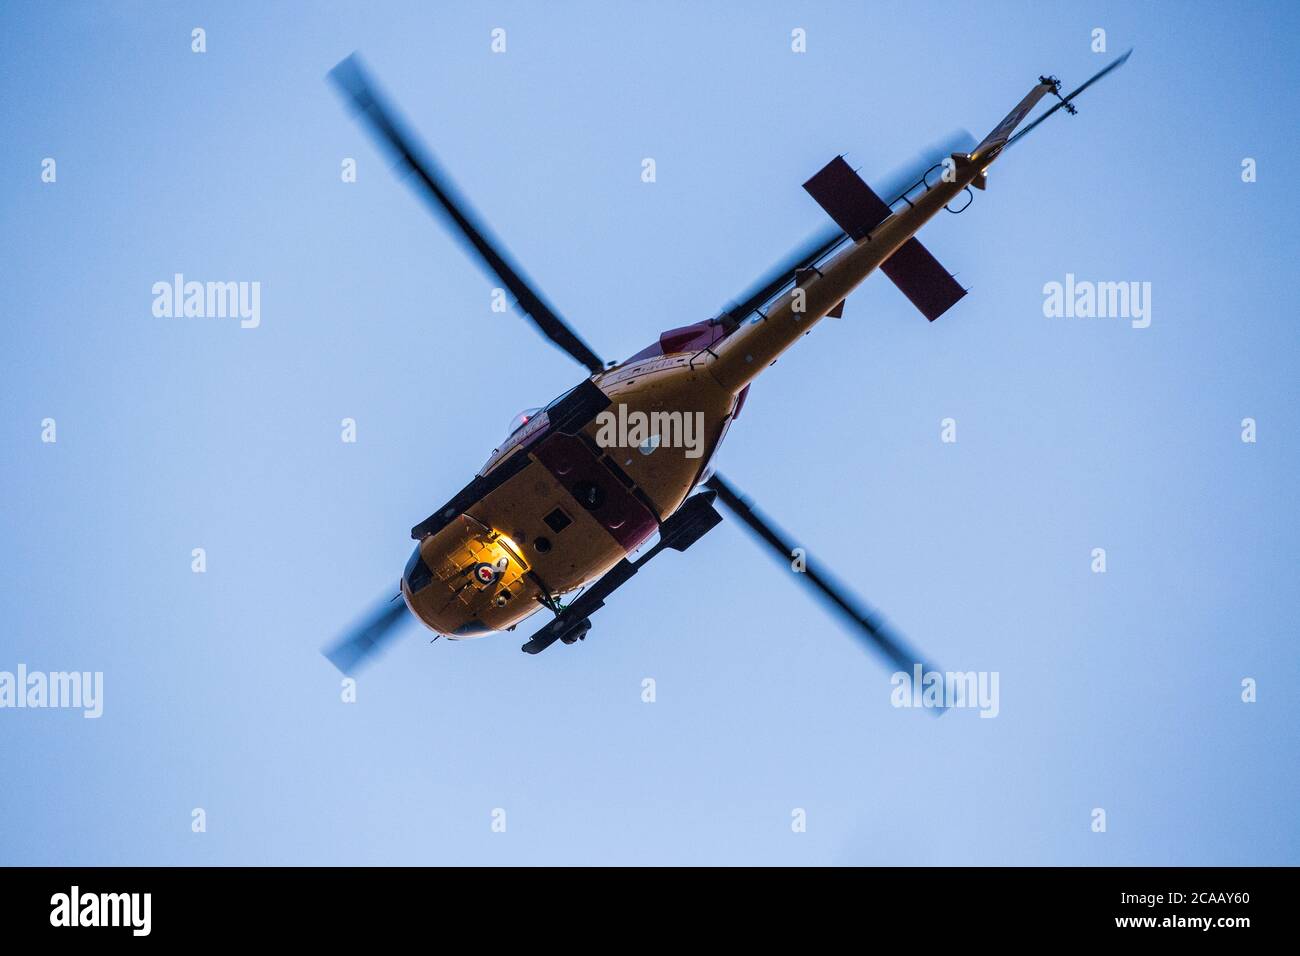 Hélicoptère de recherche et de sauvetage dans le ciel, vue de dessous. Banque D'Images